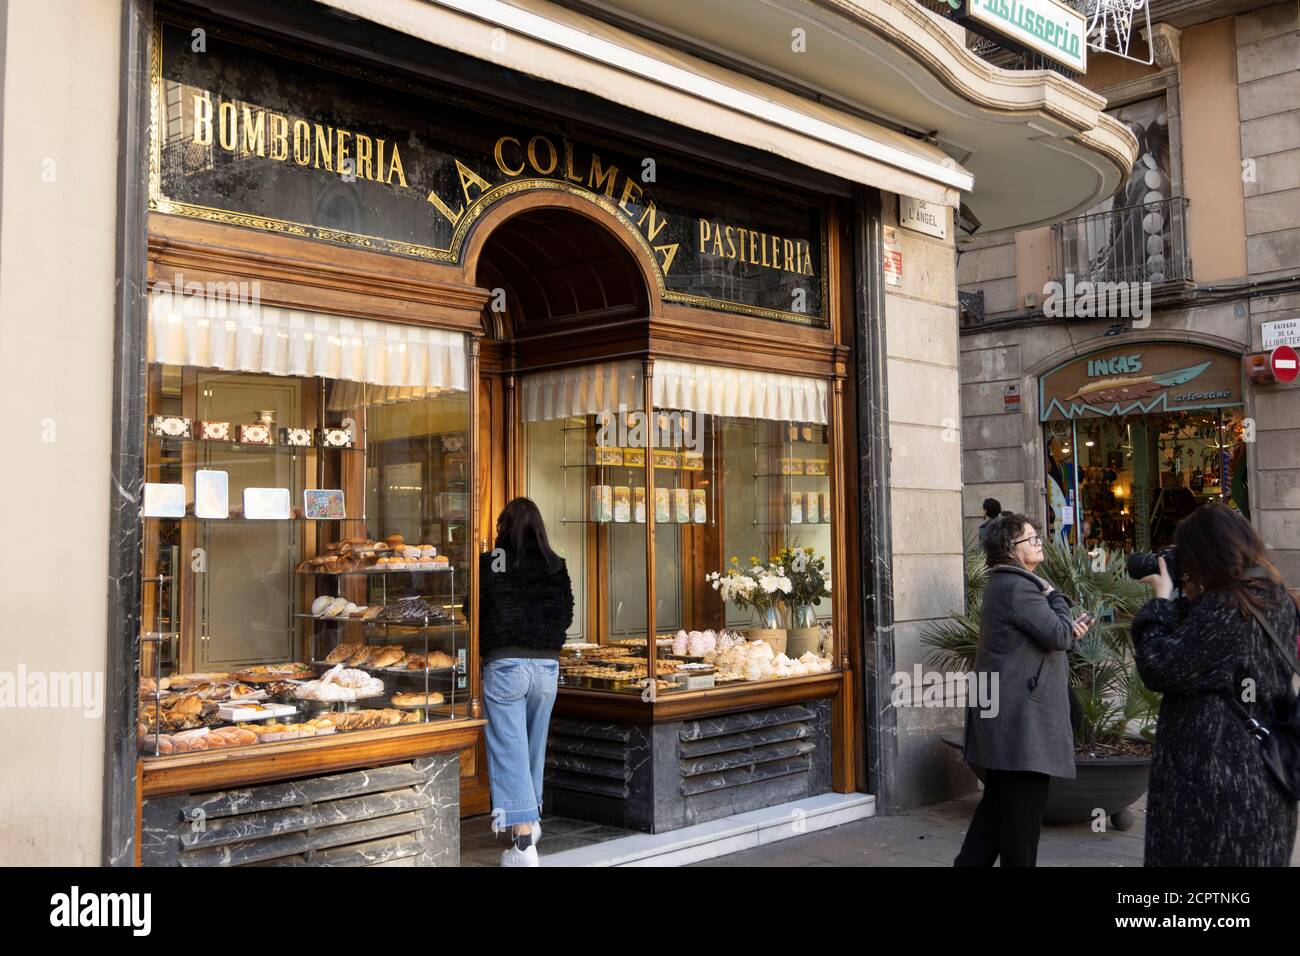 BARCELONA, SPANIEN - 23. NOVEMBER 2019: Viele Touristen besuchen Barcelona für ein Einkaufswochenende. La Colmena ist eine traditionelle Konditorei. Stockfoto